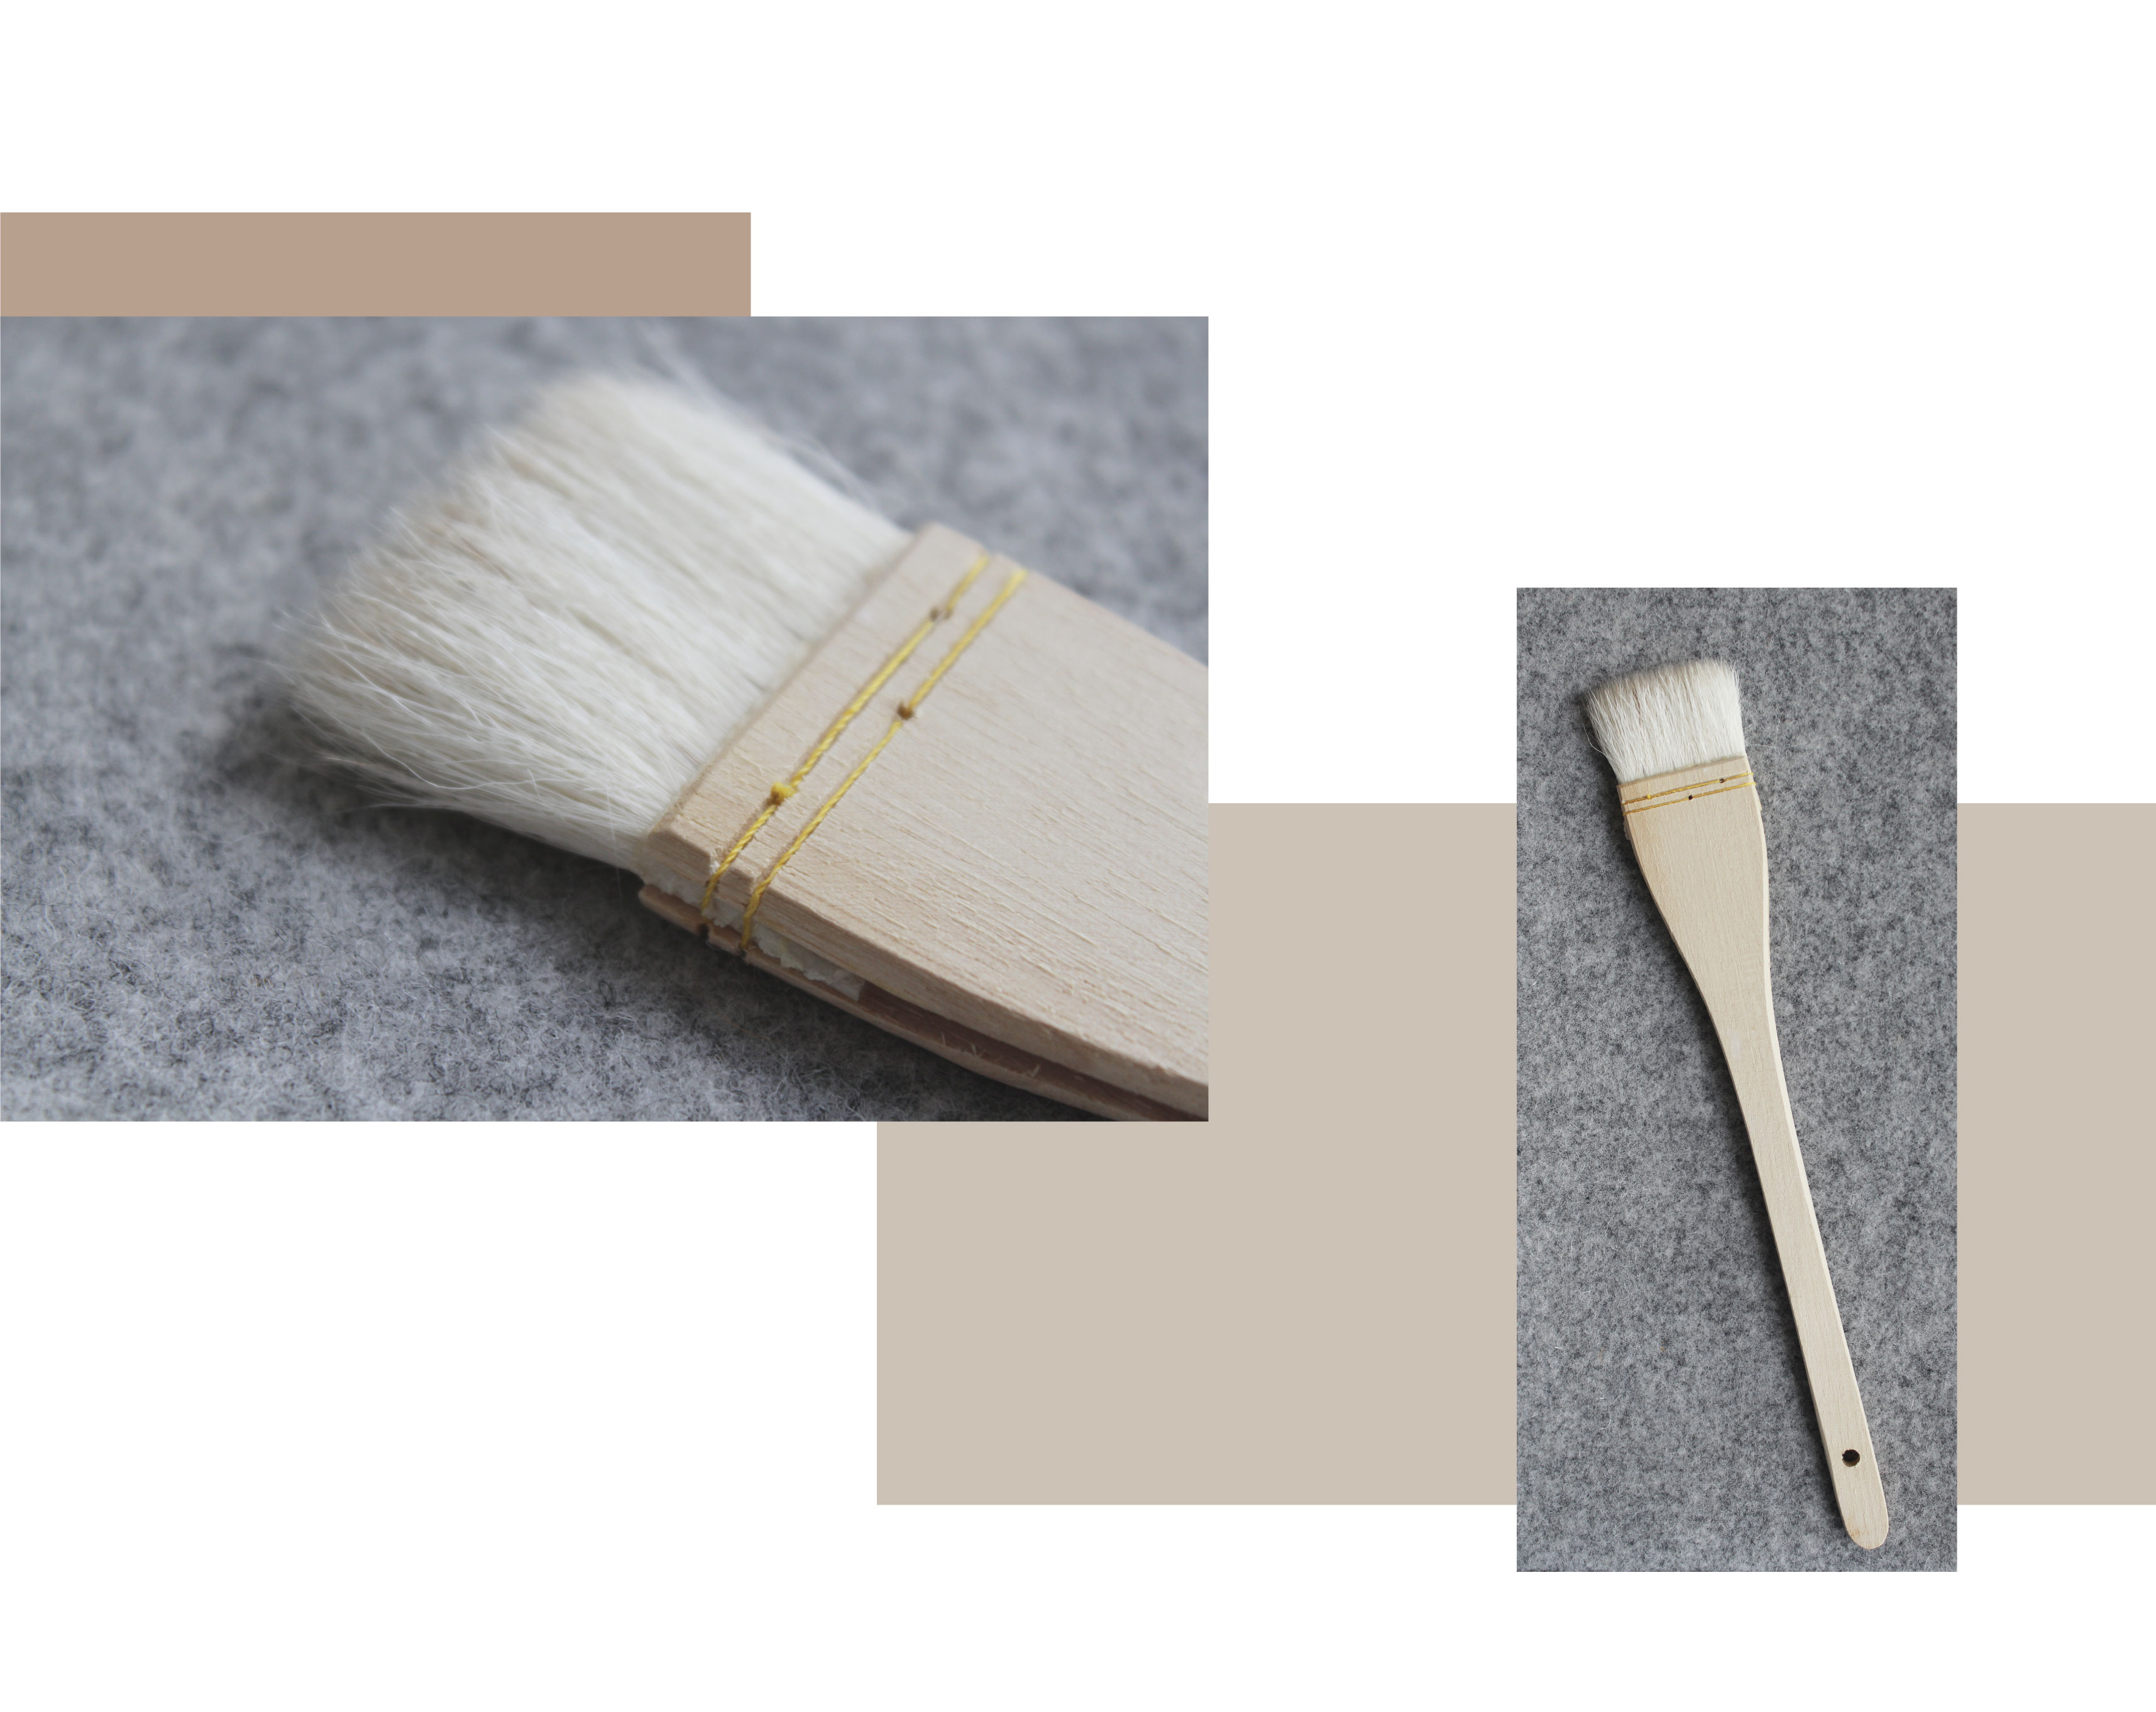  zwei Bilder, eine shwing eine Nahaufnahme von einem Seehecht Glasur Pinsel auf einem grauen Hintergrund. Die zweite zeigt die volle Seehechtbürste. Holzgriff, Nähen, faserige Bürste.